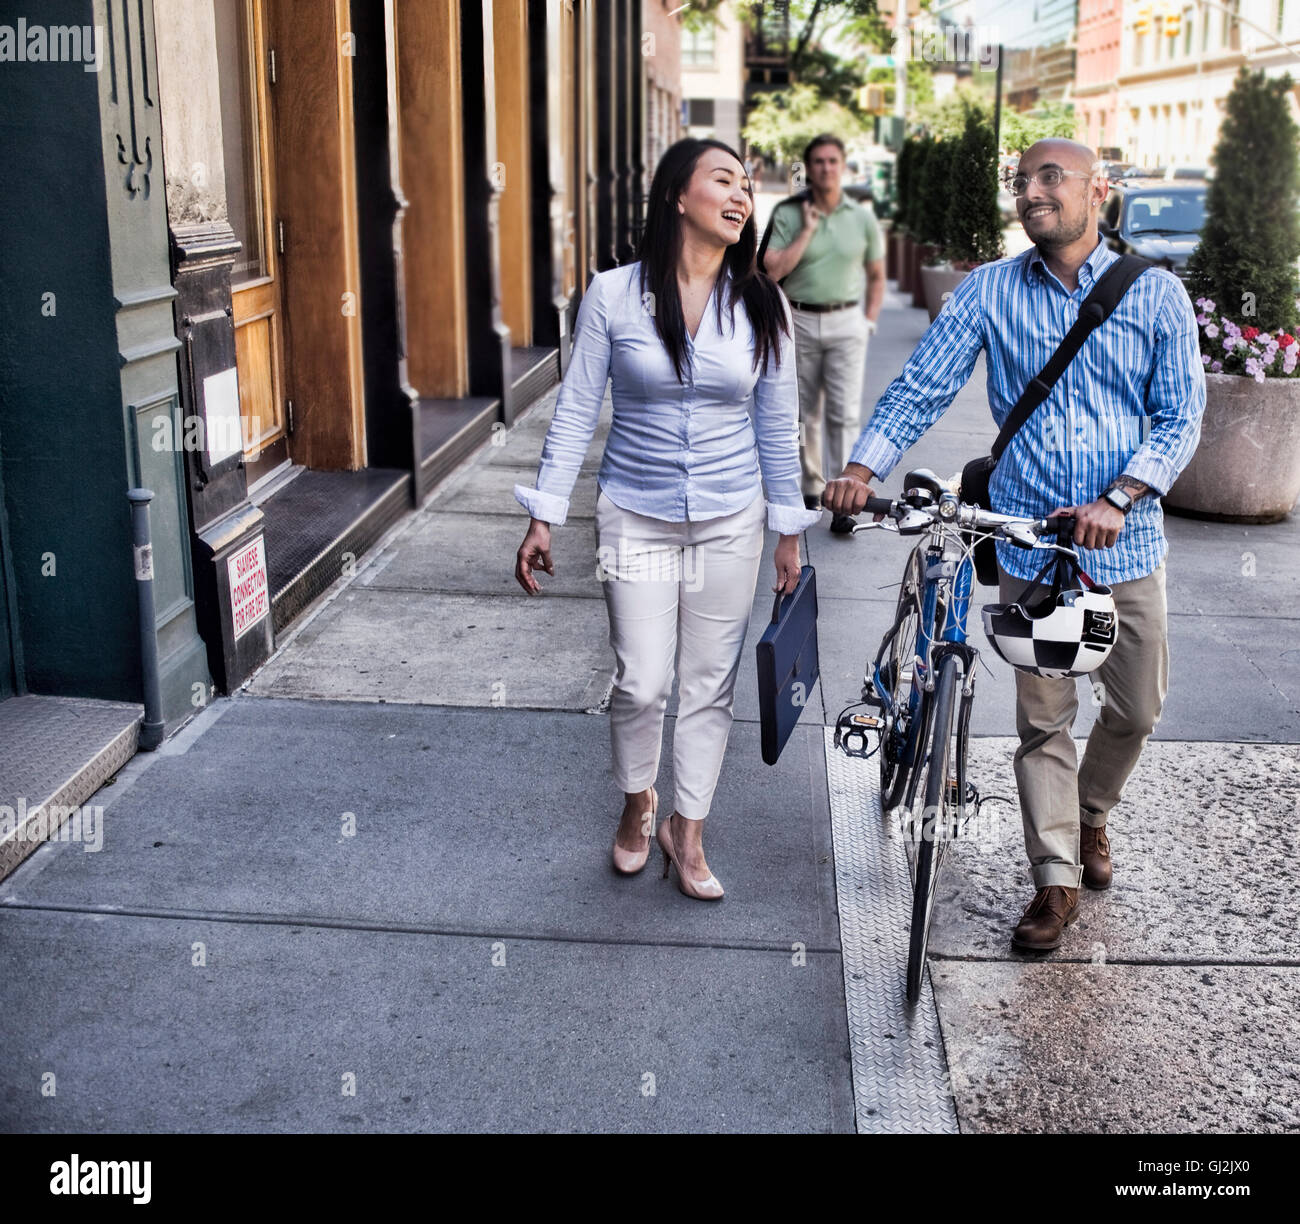 Business man and woman walking in street, man pushing bike, smiling Stock Photo